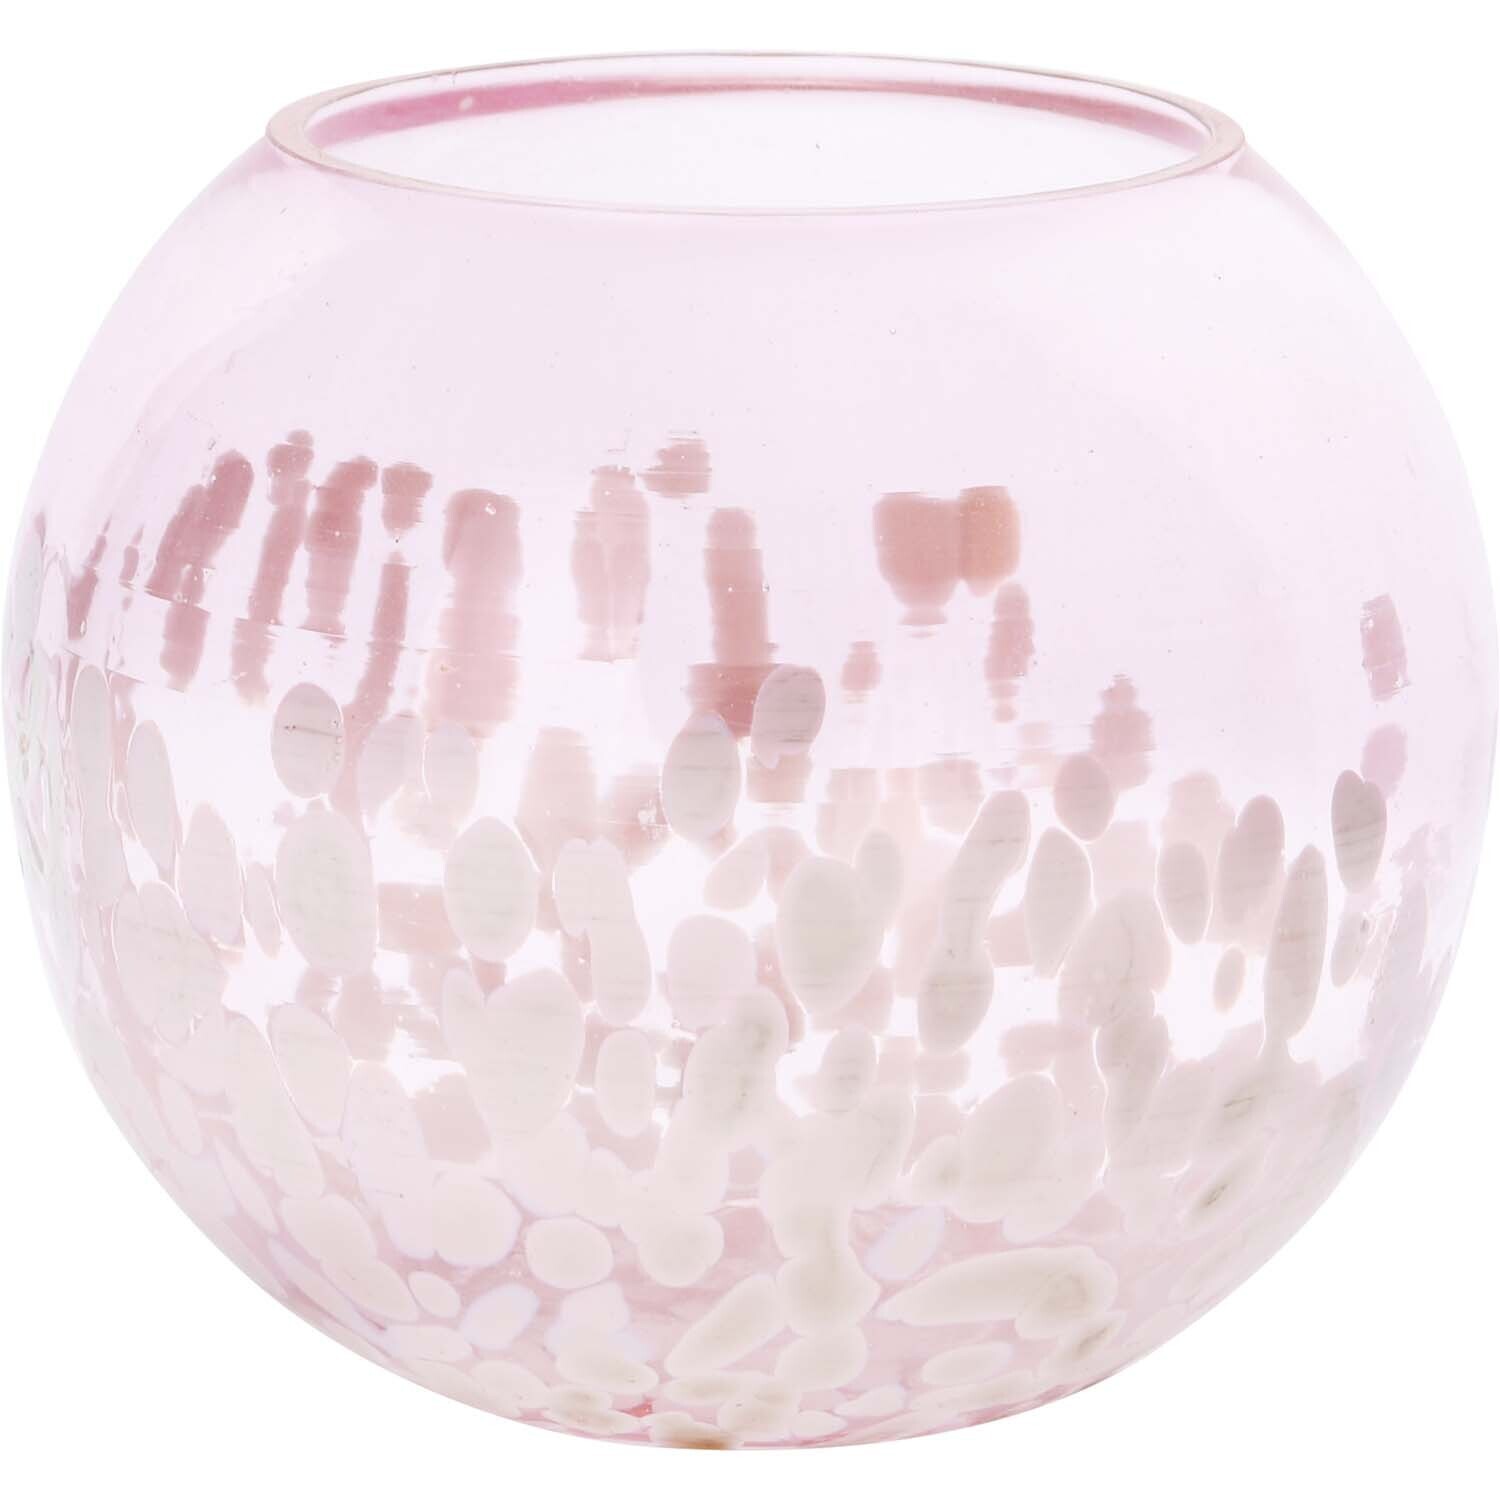 Theelicht roze met spikkels glas